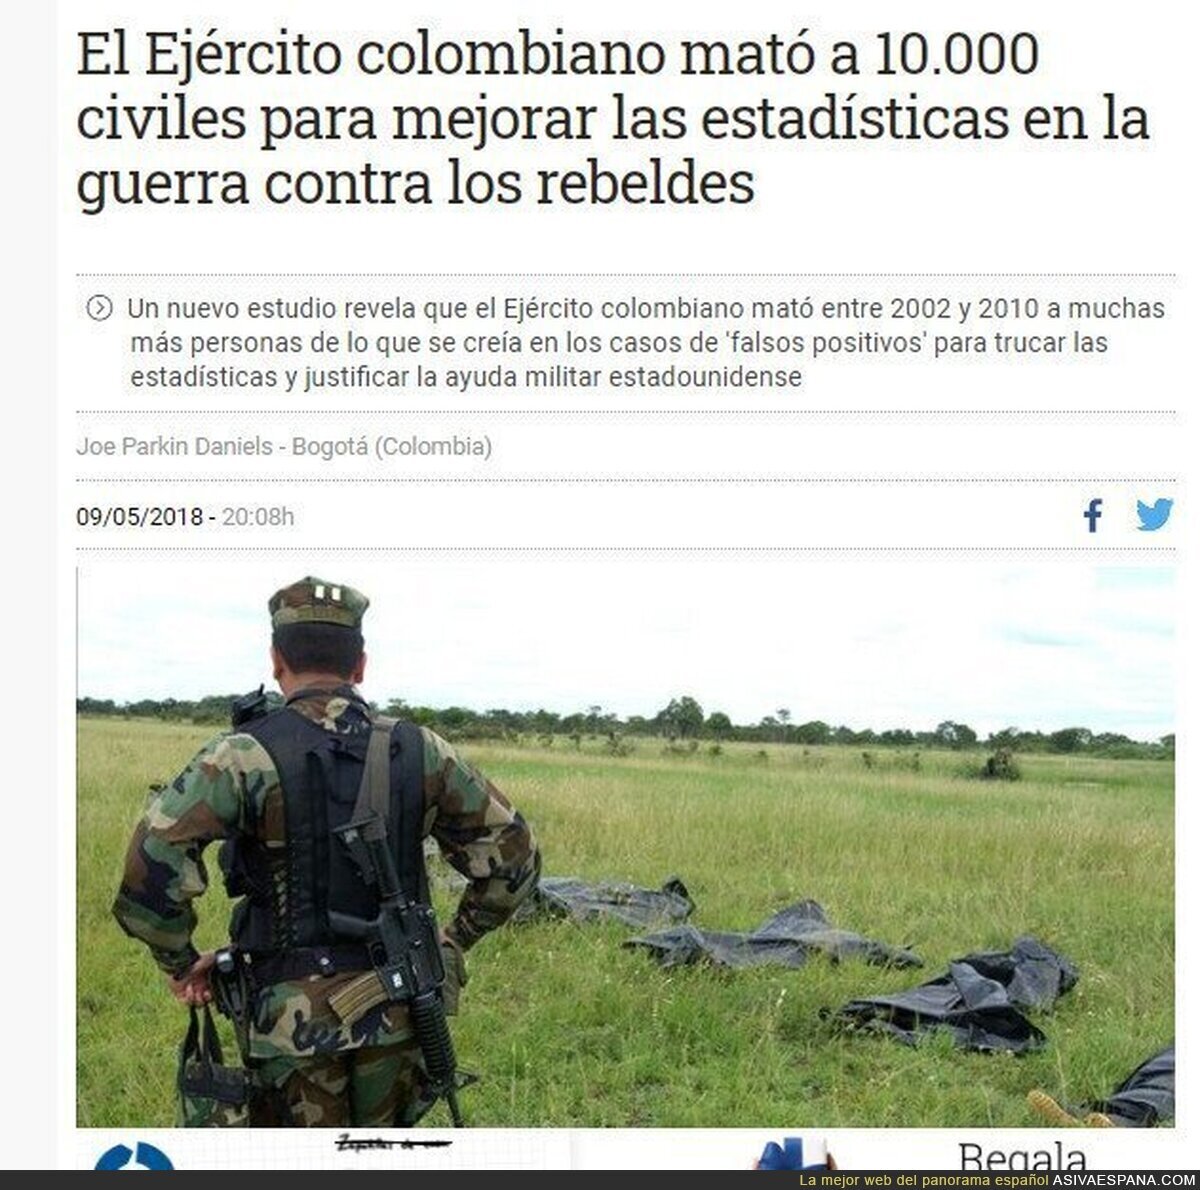 Las cifras del terrorismo de estado en Colombia